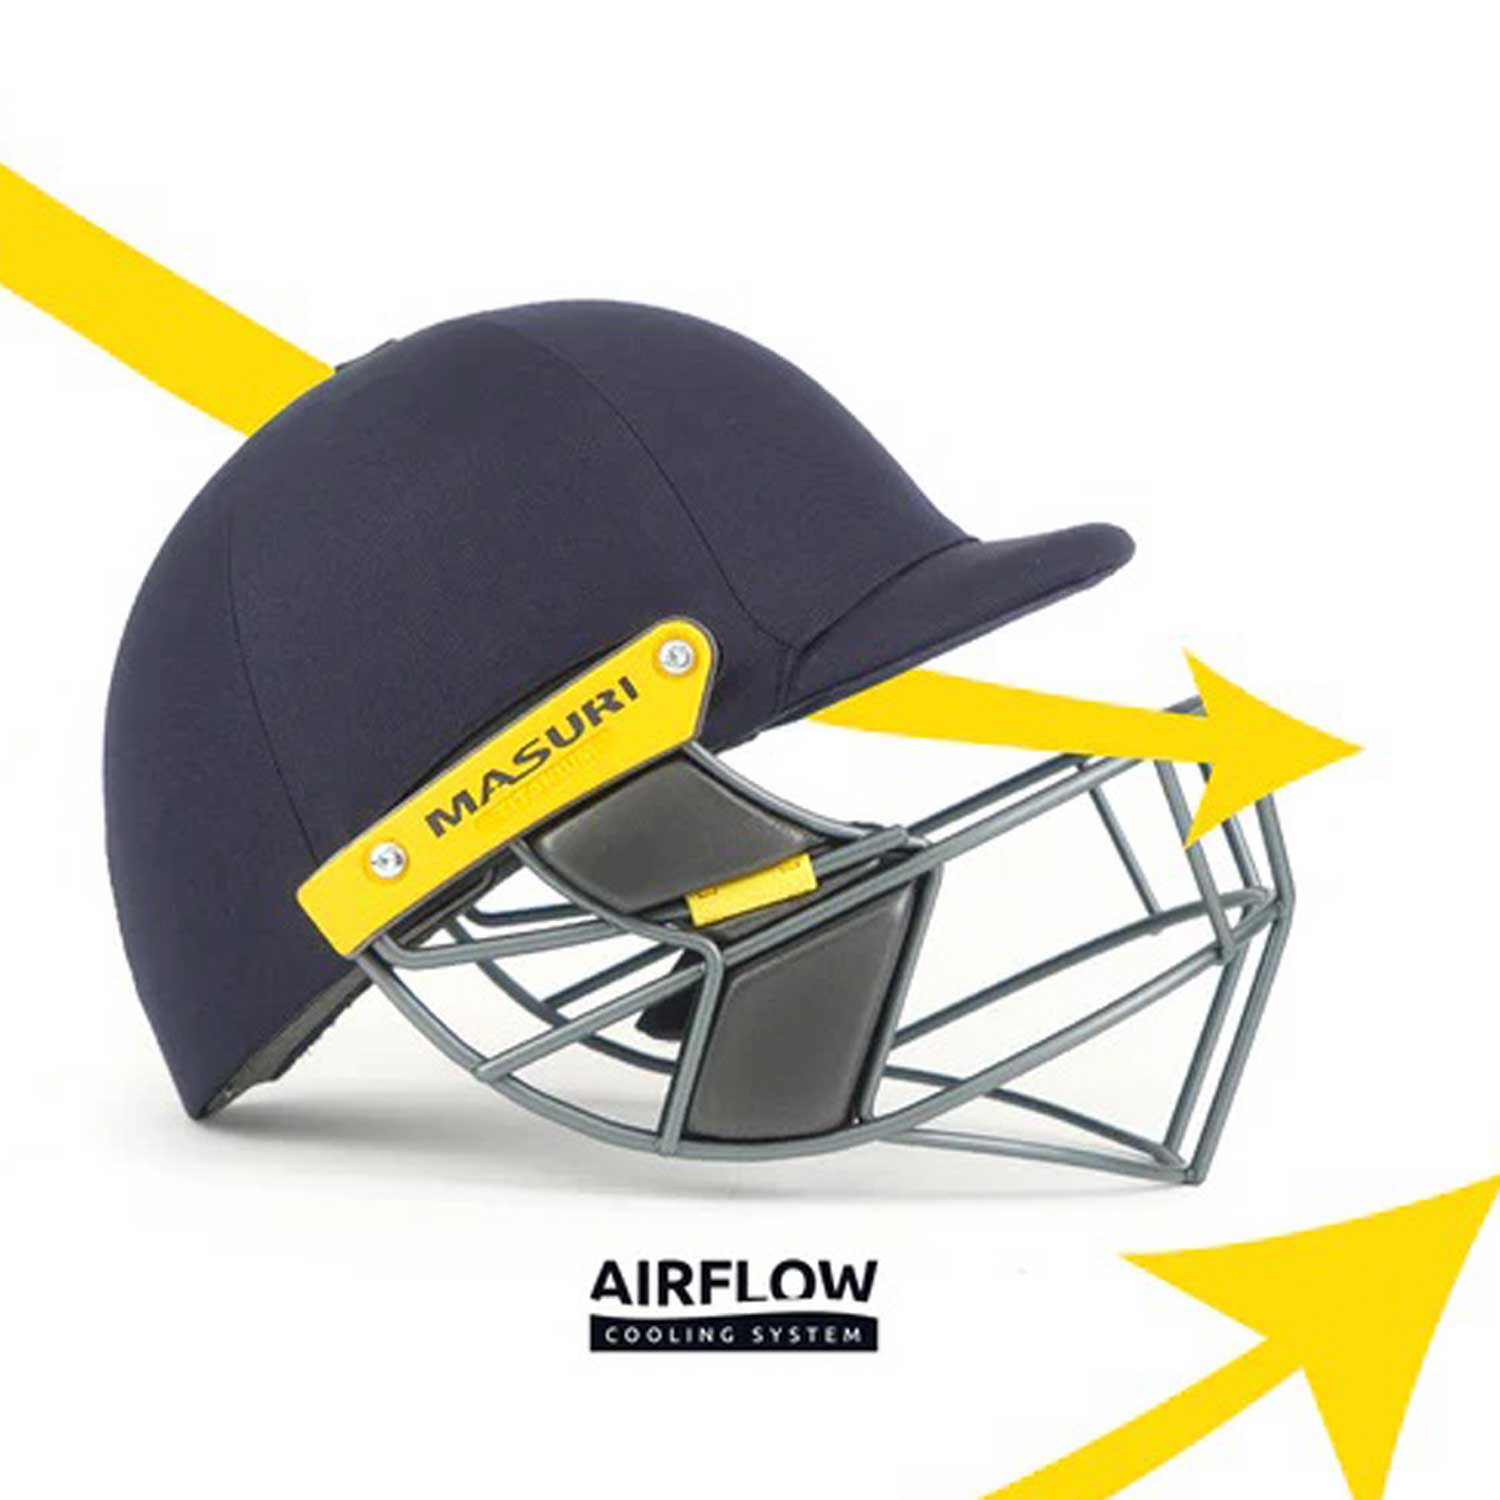 Masuri T-Line Cricket Helmet Senior - Titanium Grille